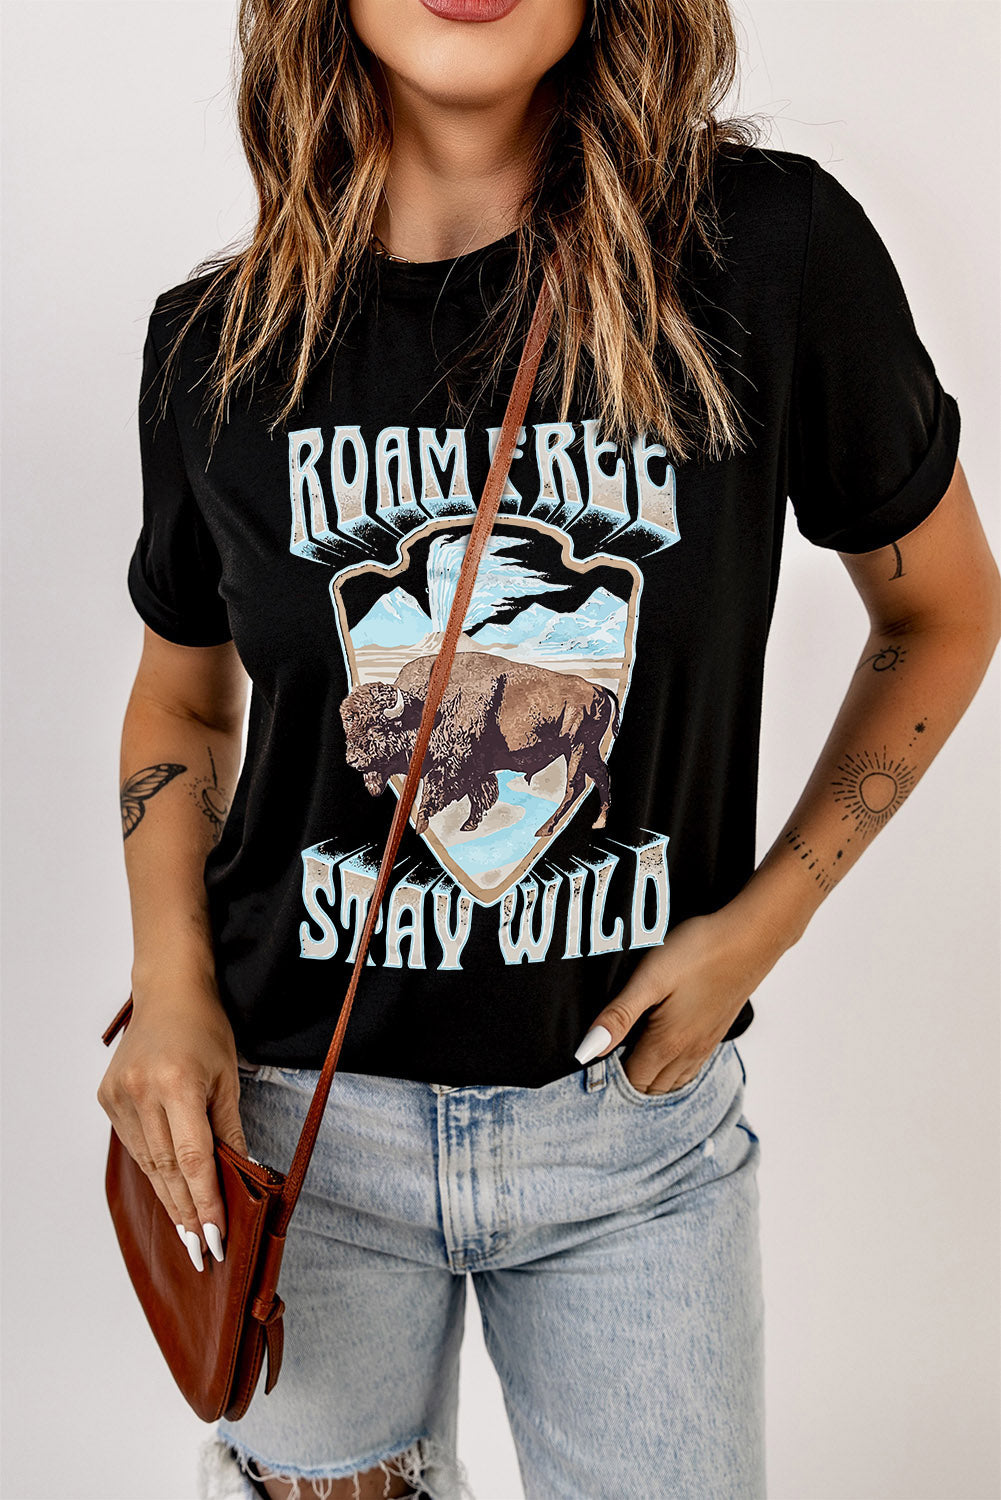 "Roam Free & Stay Wild" Graphic T-Shirt